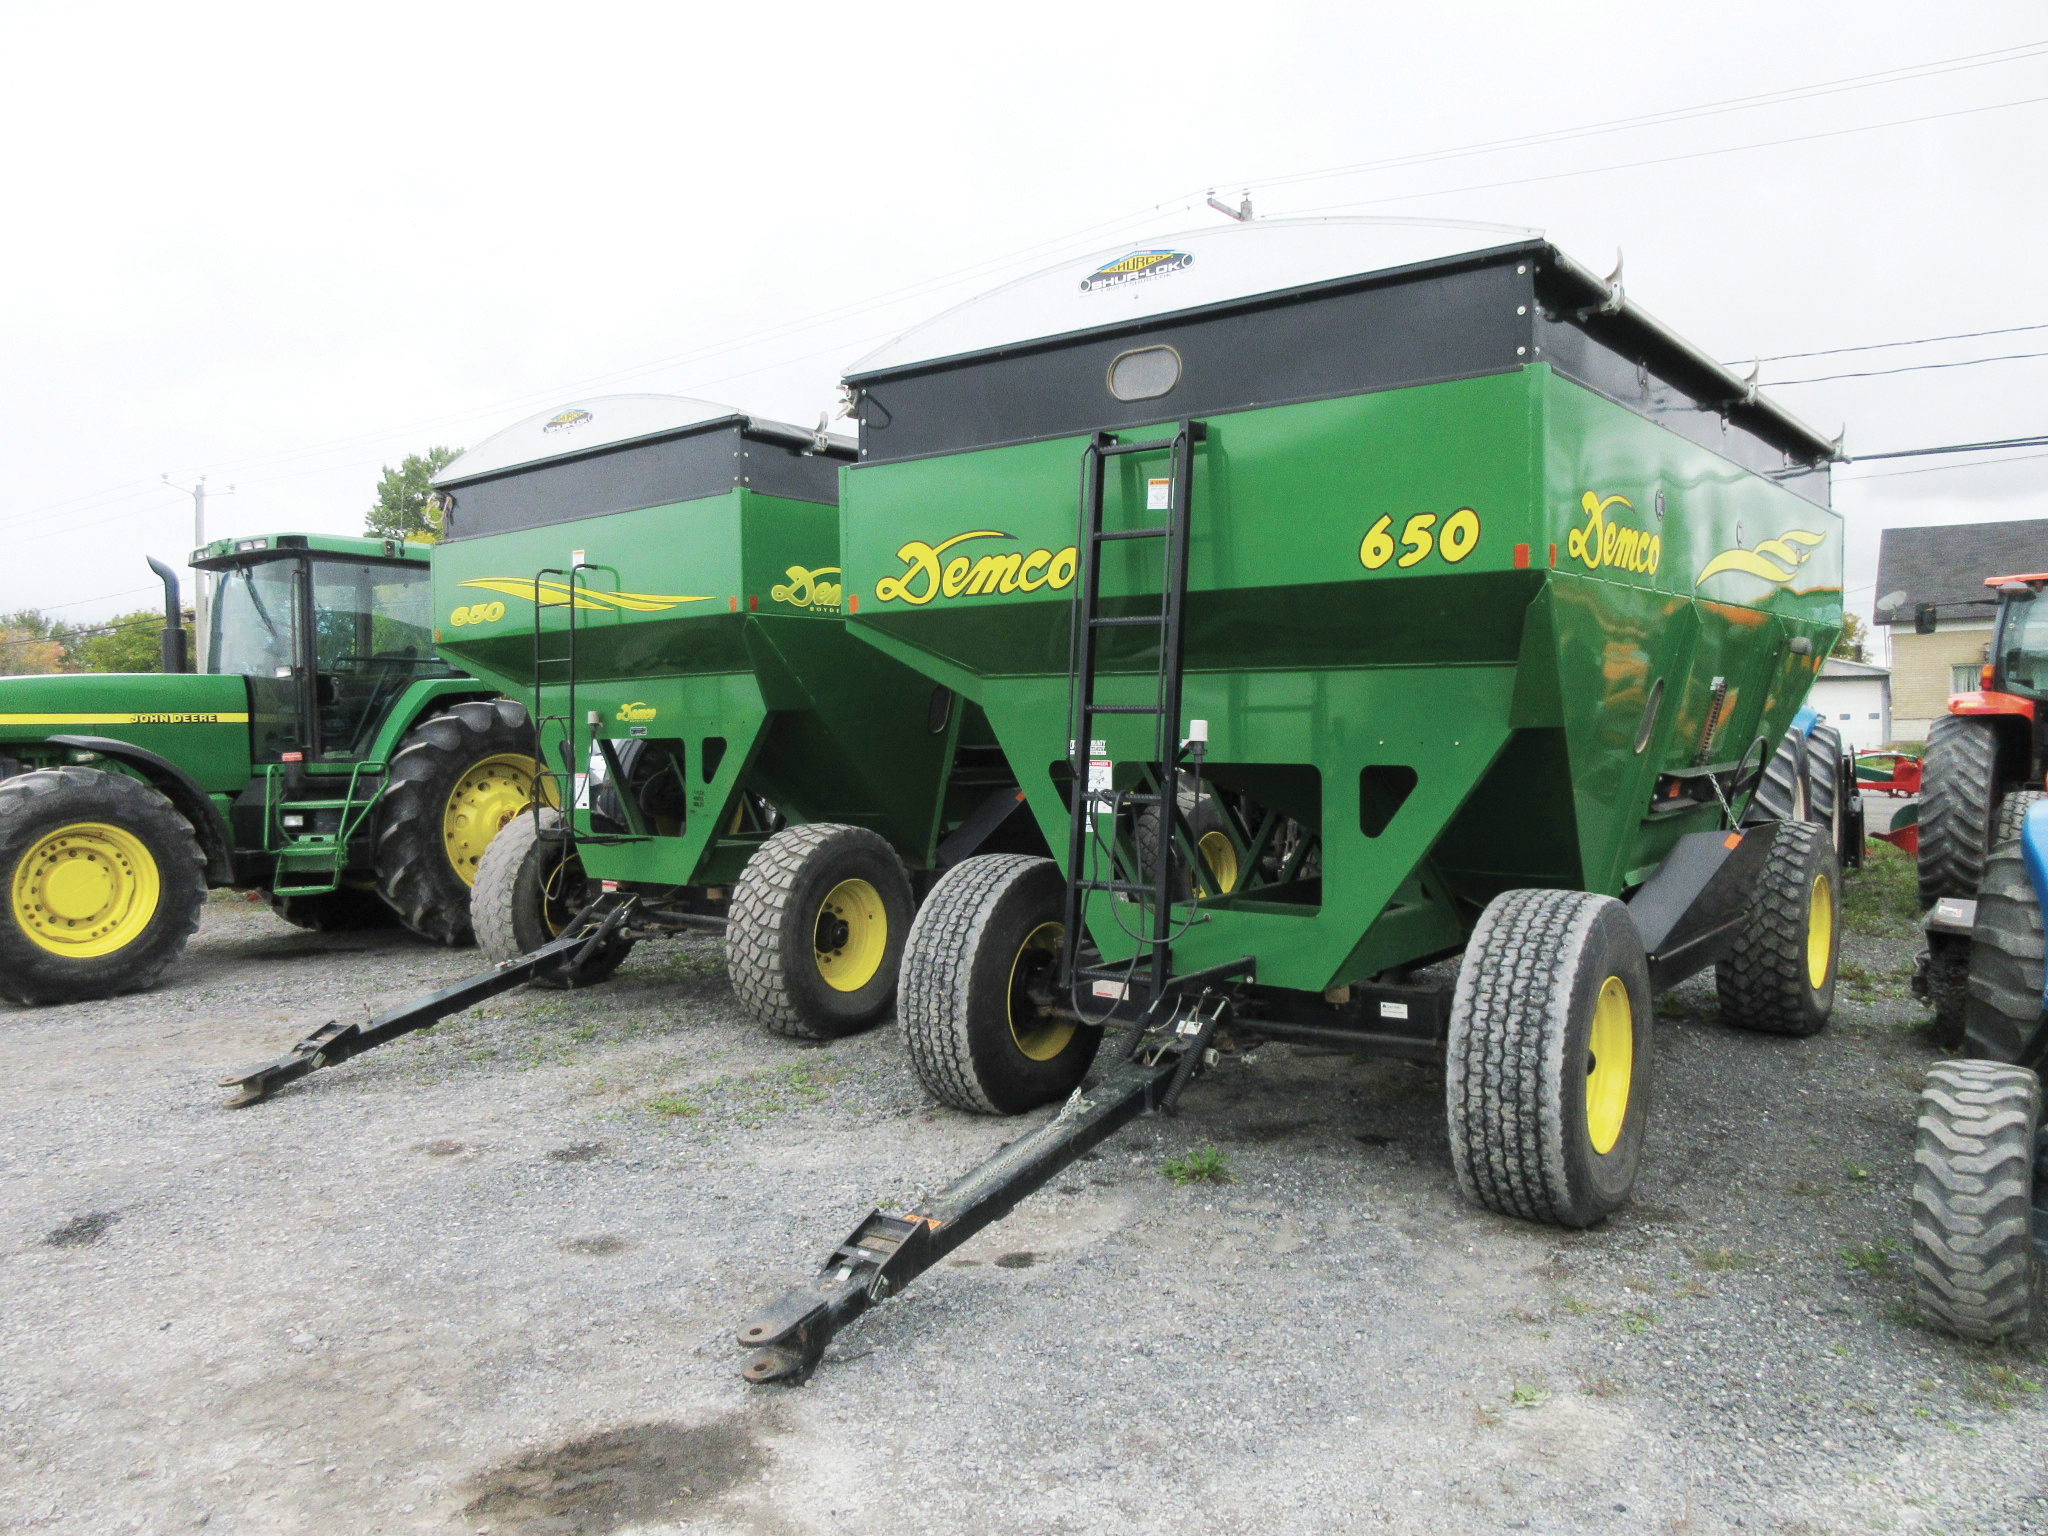 Grain trailer Demco 650